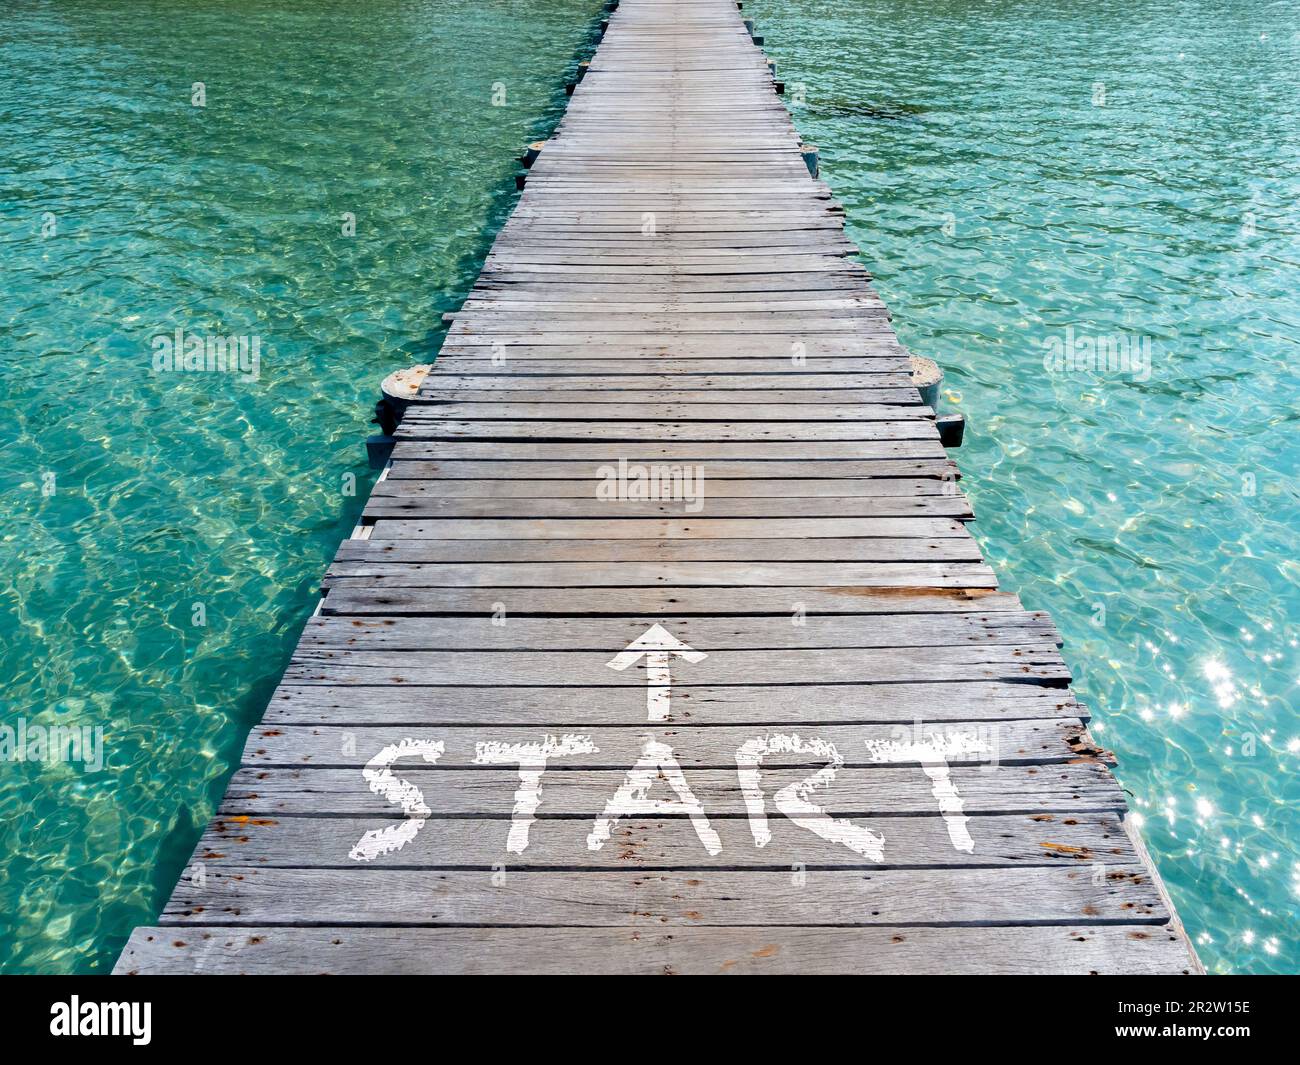 Start, weißer Text und Pfeil auf der Holzbrücke Richtung Meer. Holzplank Pathway Bridge auf klarem Meerwasser am Hafen der Insel an sonnigen Tagen. Begi Stockfoto